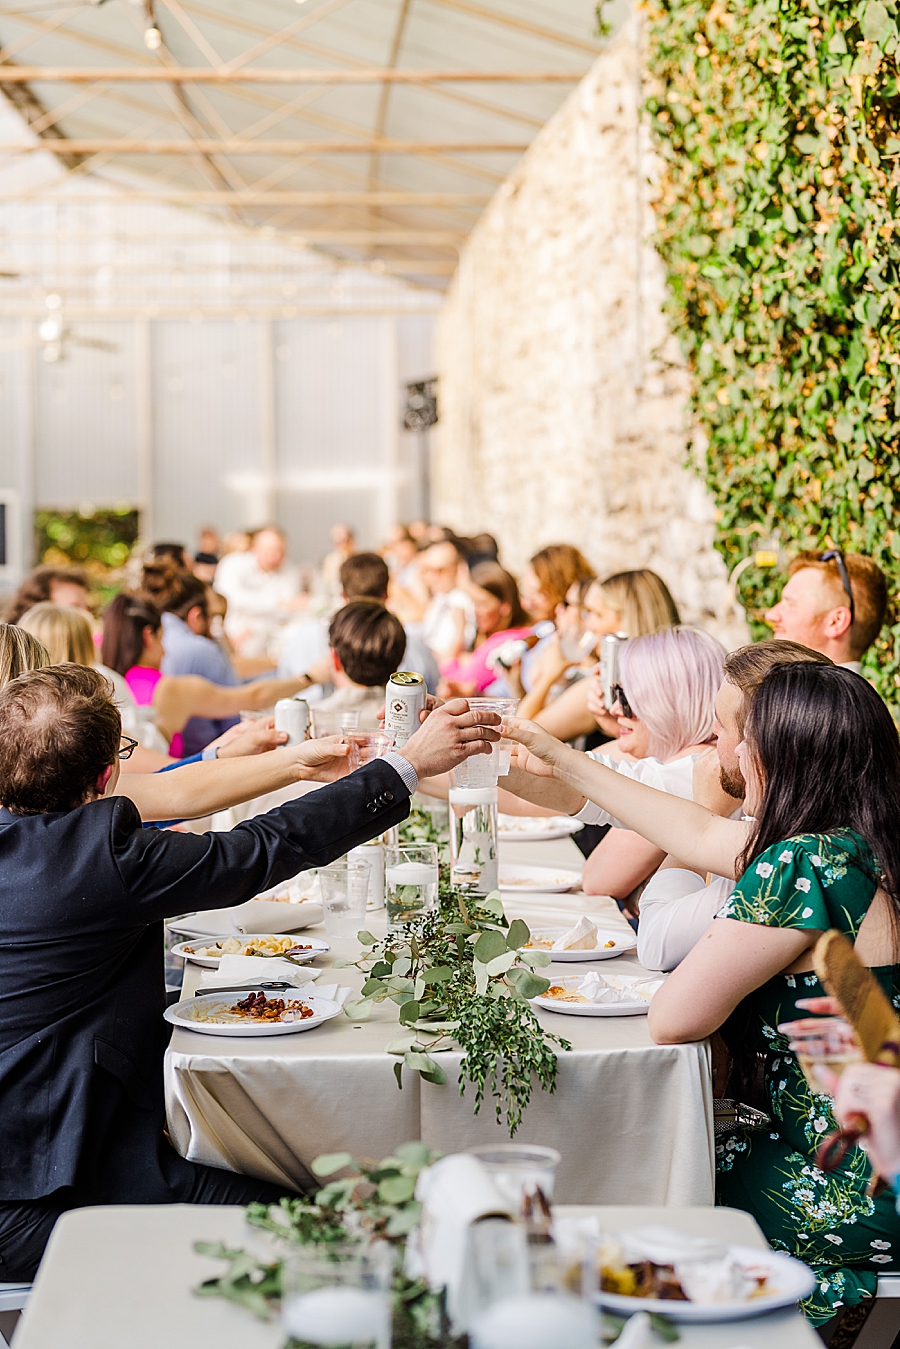 Guests raise glasses at Wedding by Amanda May Photos